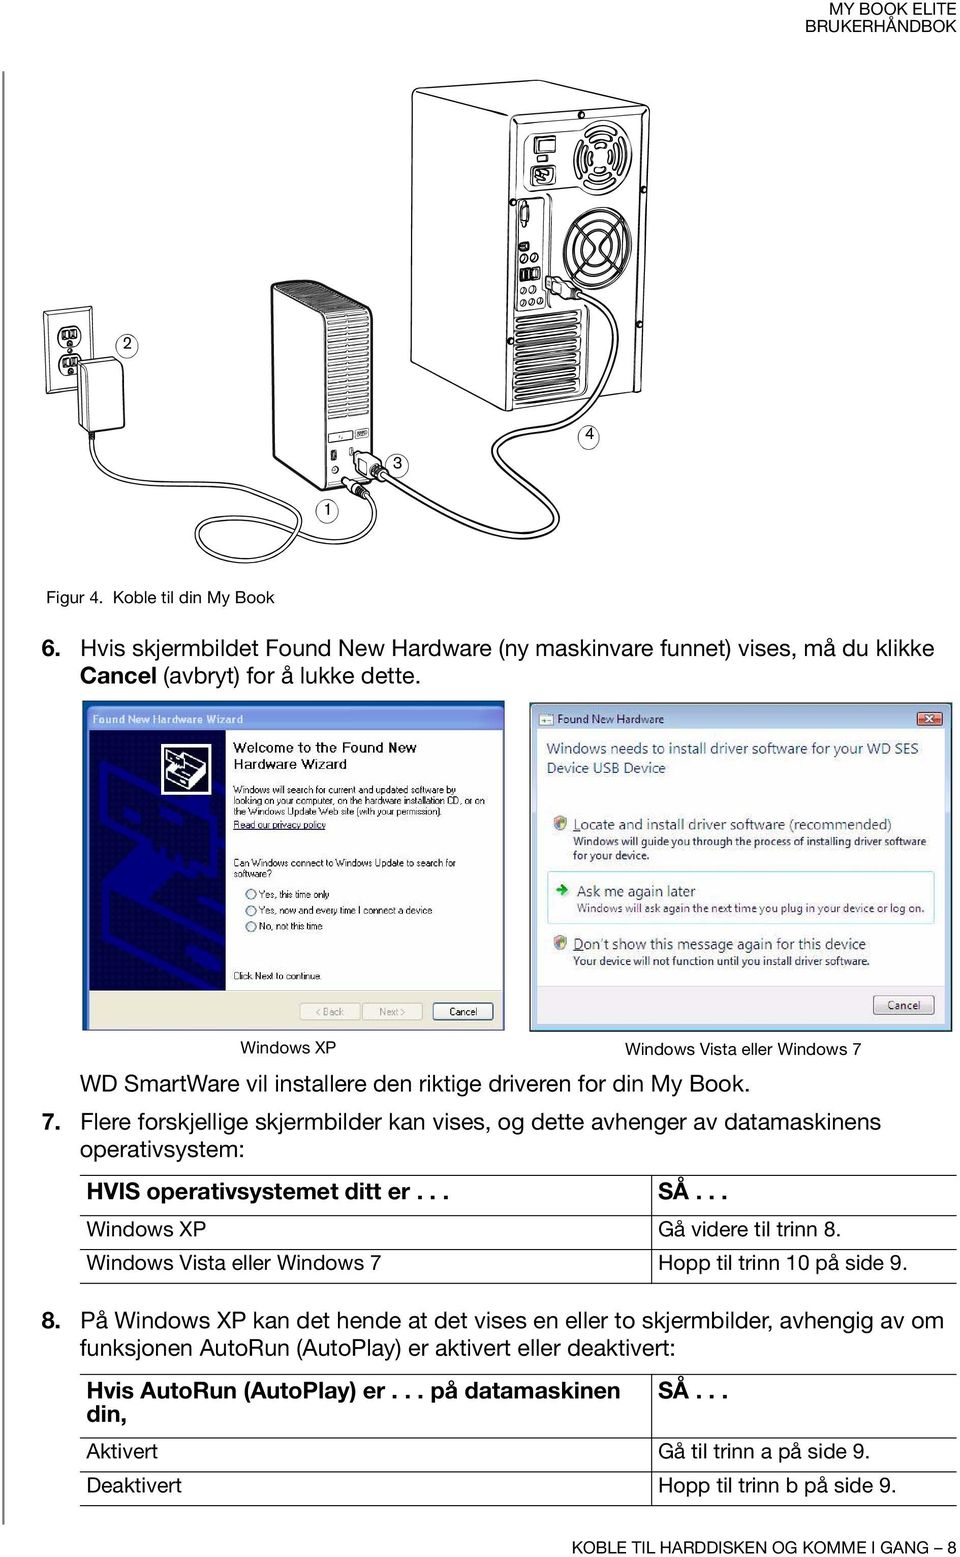 Flere forskjellige skjermbilder kan vises, og dette avhenger av datamaskinens operativsystem: HVIS operativsystemet ditt er... SÅ... Windows XP Gå videre til trinn 8.